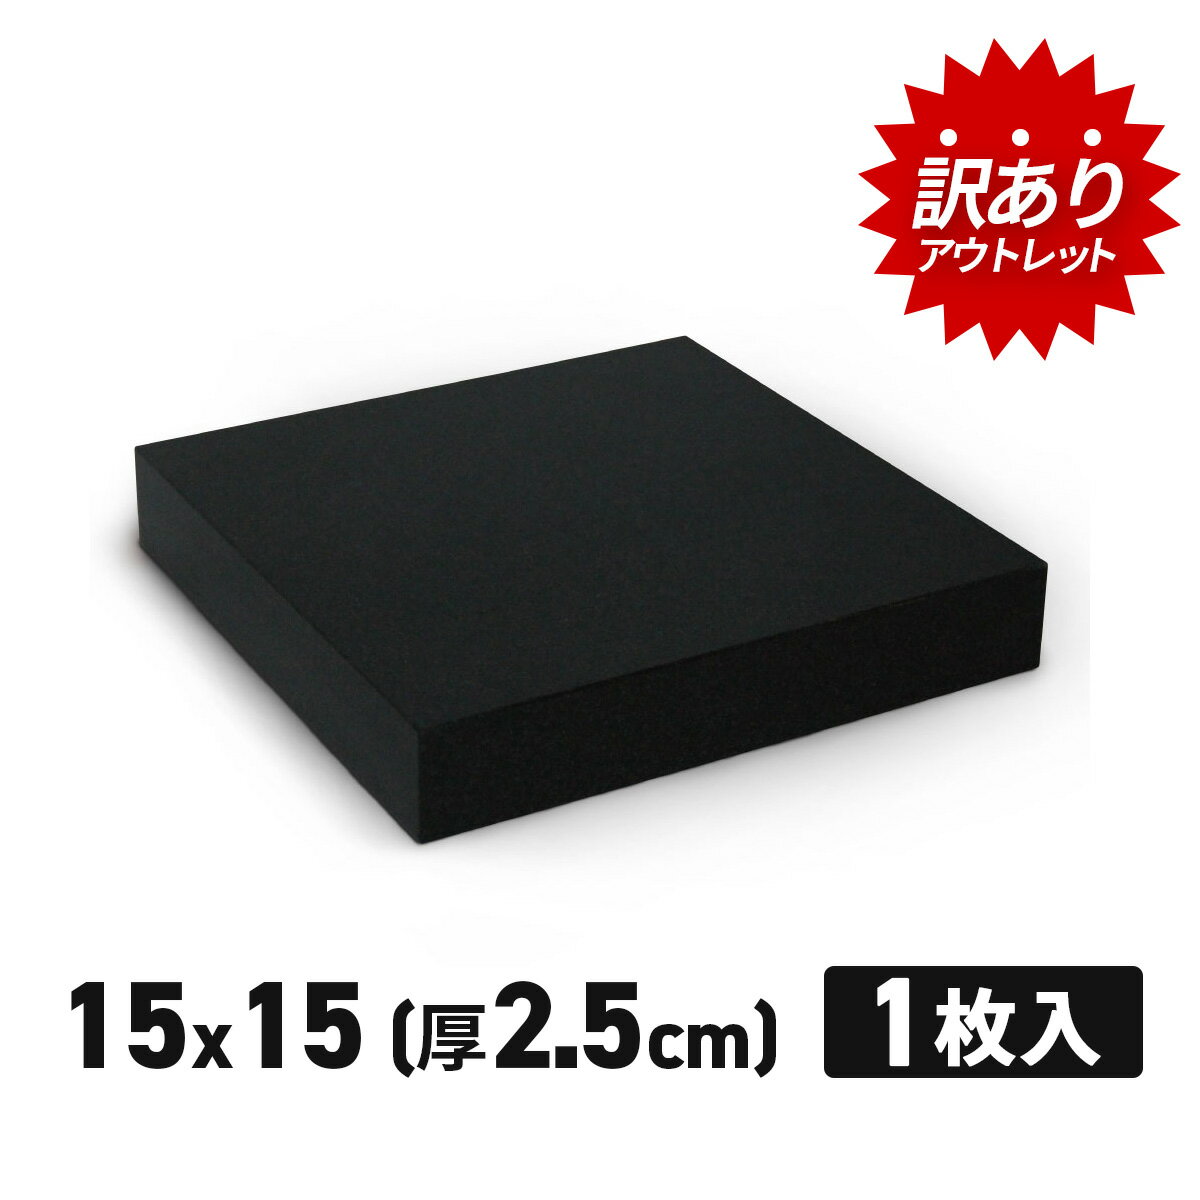 【訳あり】 アウトレット オーディオボード 黒 15×15c